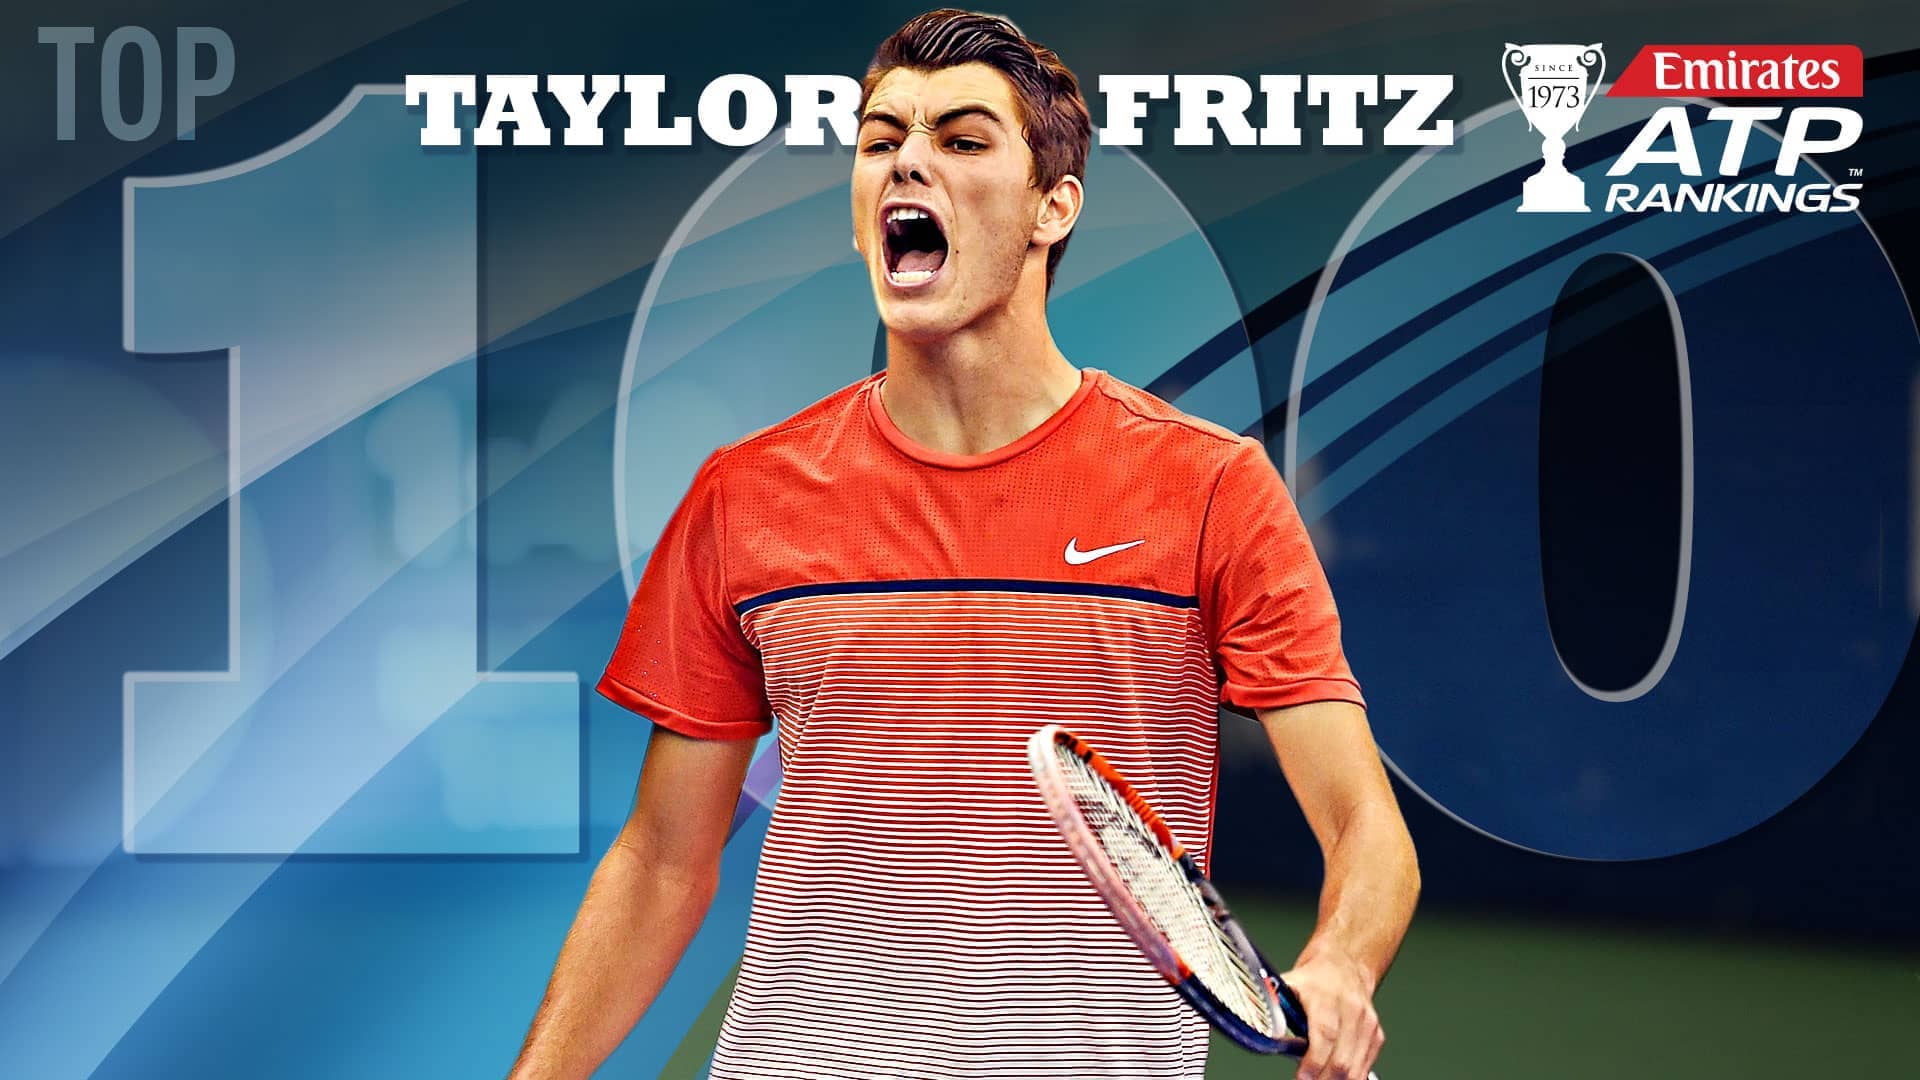 Taylor Fritz hizo su entrada en el Top 100 del Emirates ATP Rankings.